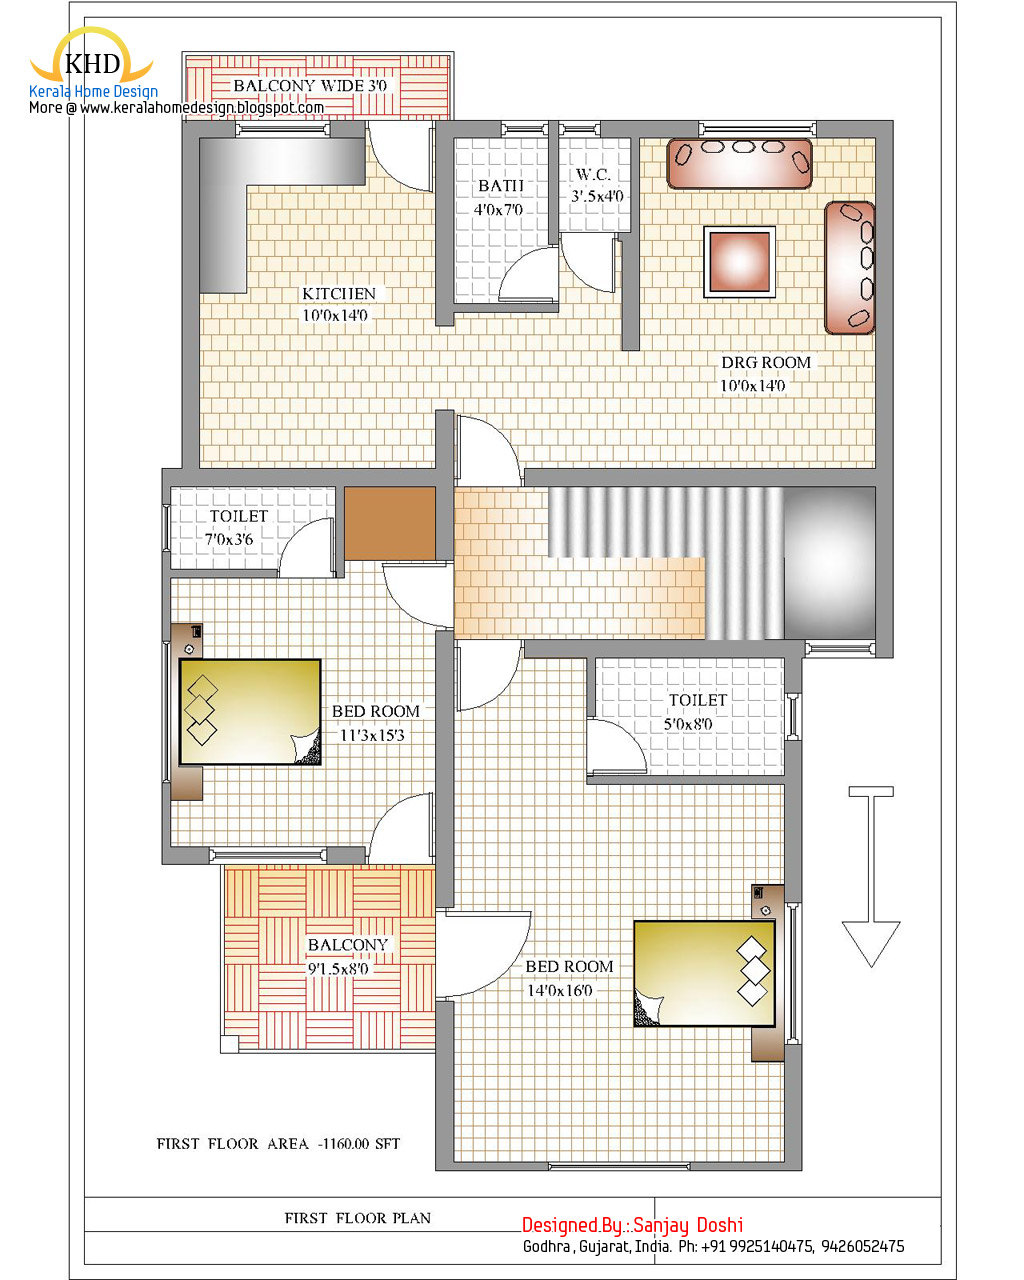 Apartment Plan Design Ideas